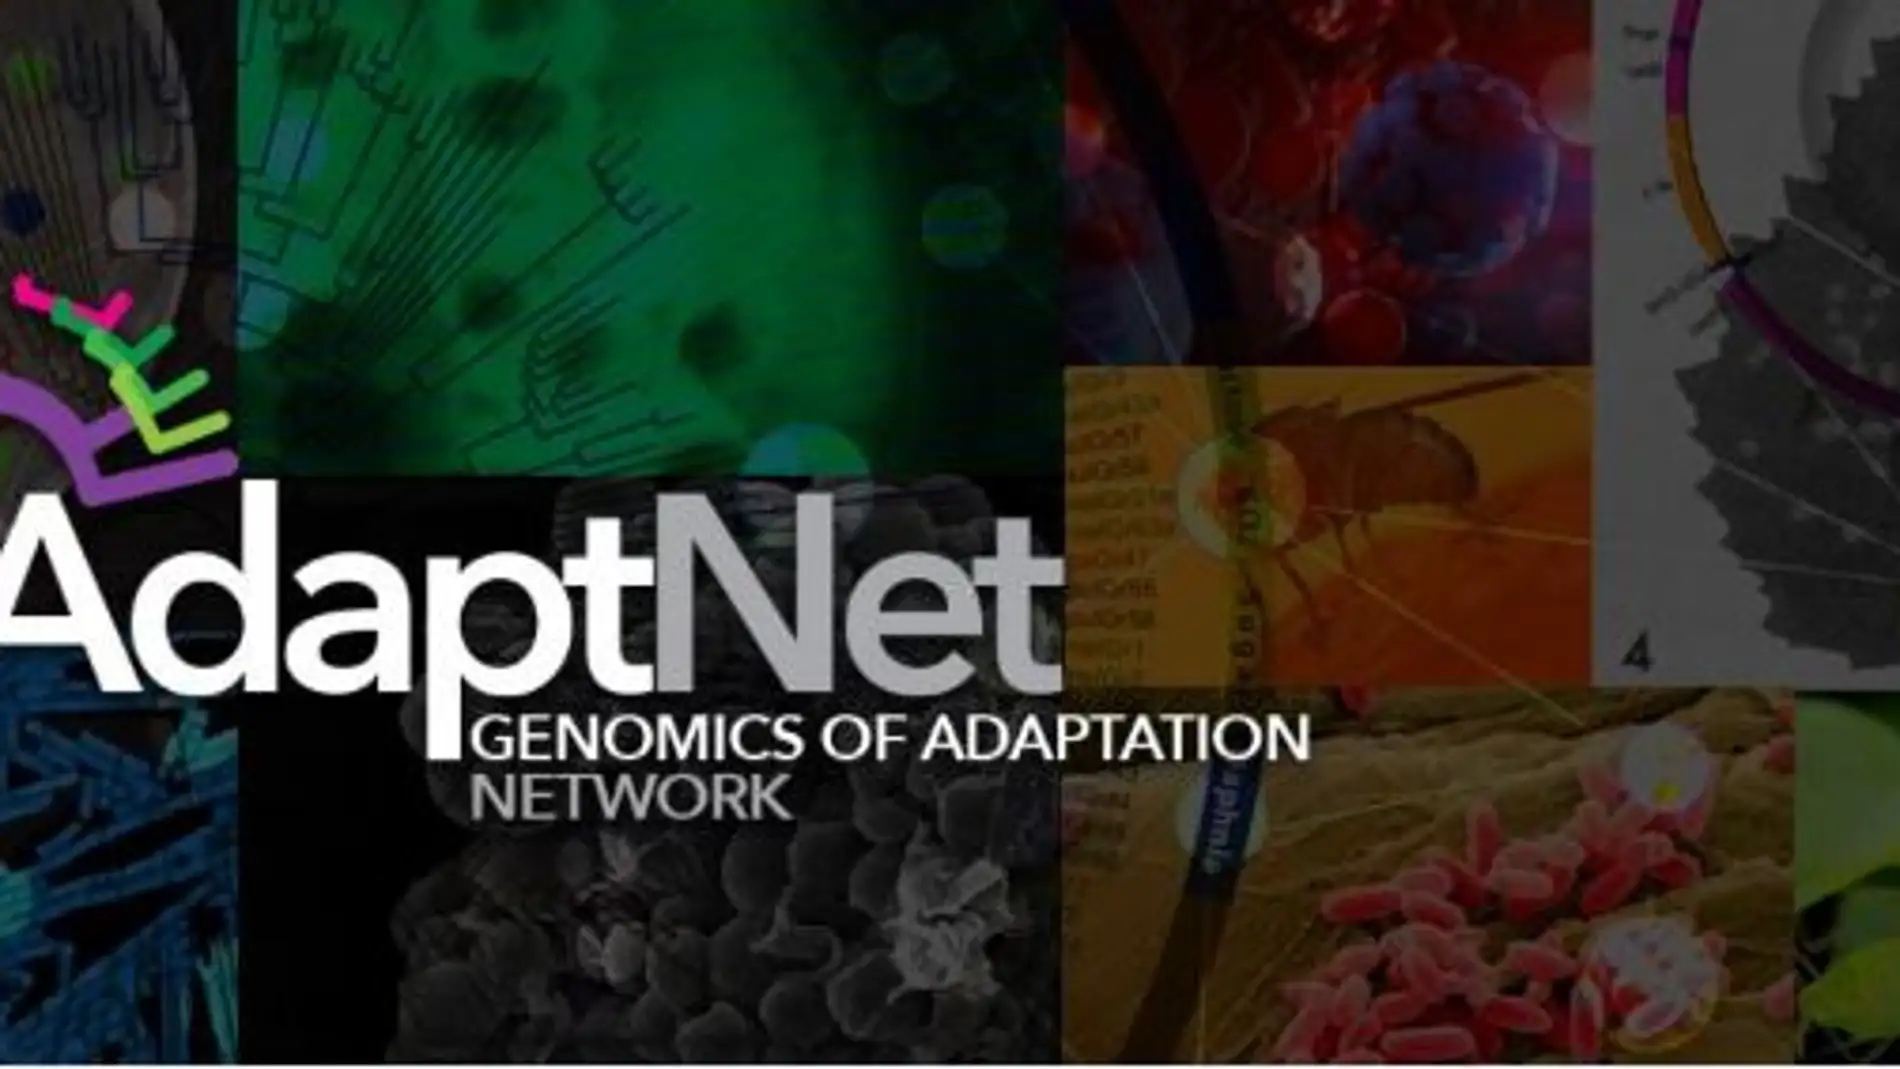 AdaptNET impulsará la colaboración de los equipos de investigación en el marco de la genómica evolutiva y potenciará la divulgación de sus avances a toda la sociedad.